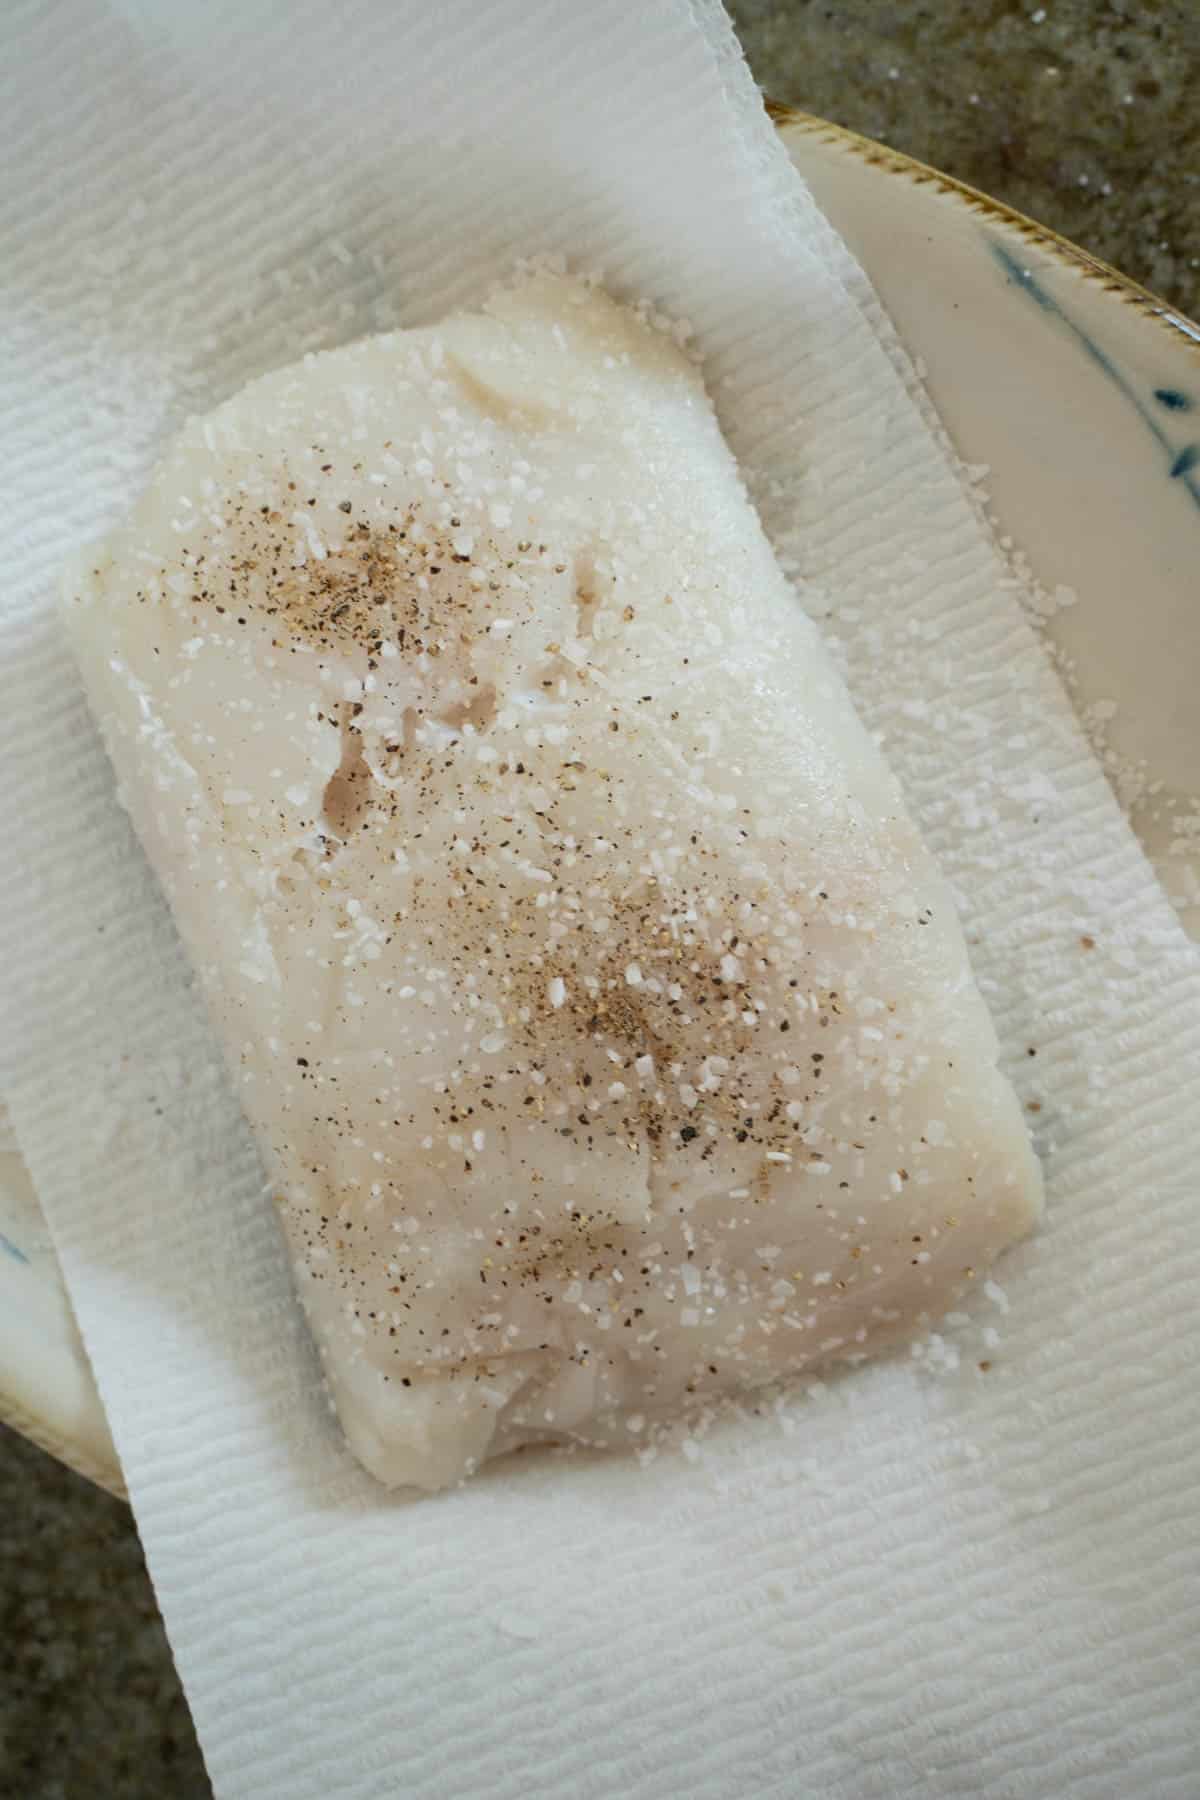 halibut filet sprinkled evenly on all sides with salt mixture on a paper towel